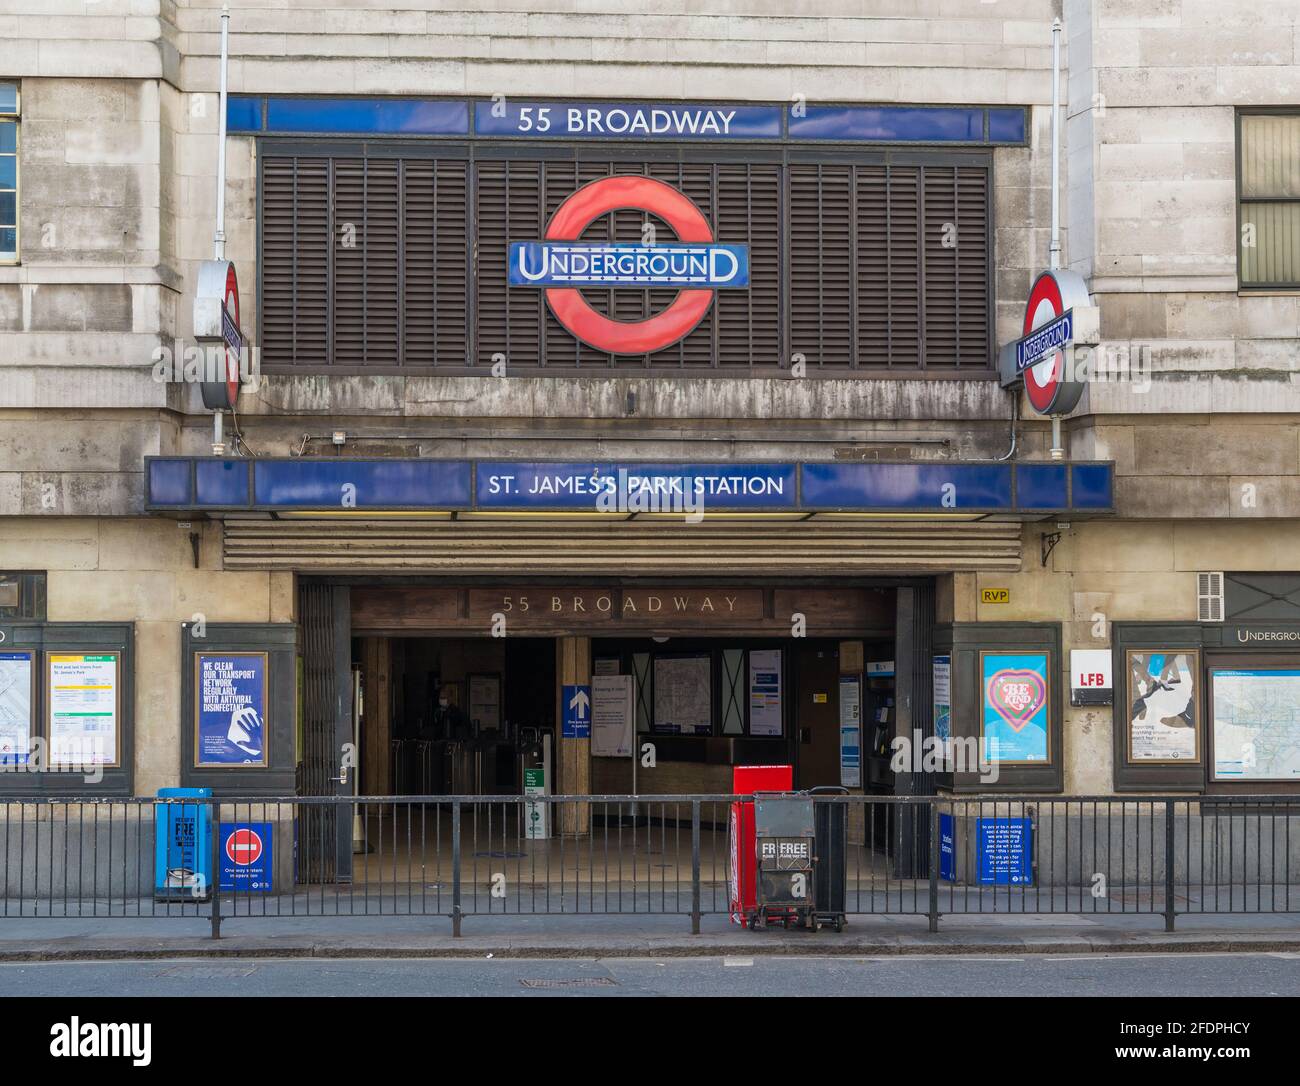 St. James's Park underground station. London, England, UK Stock Photo